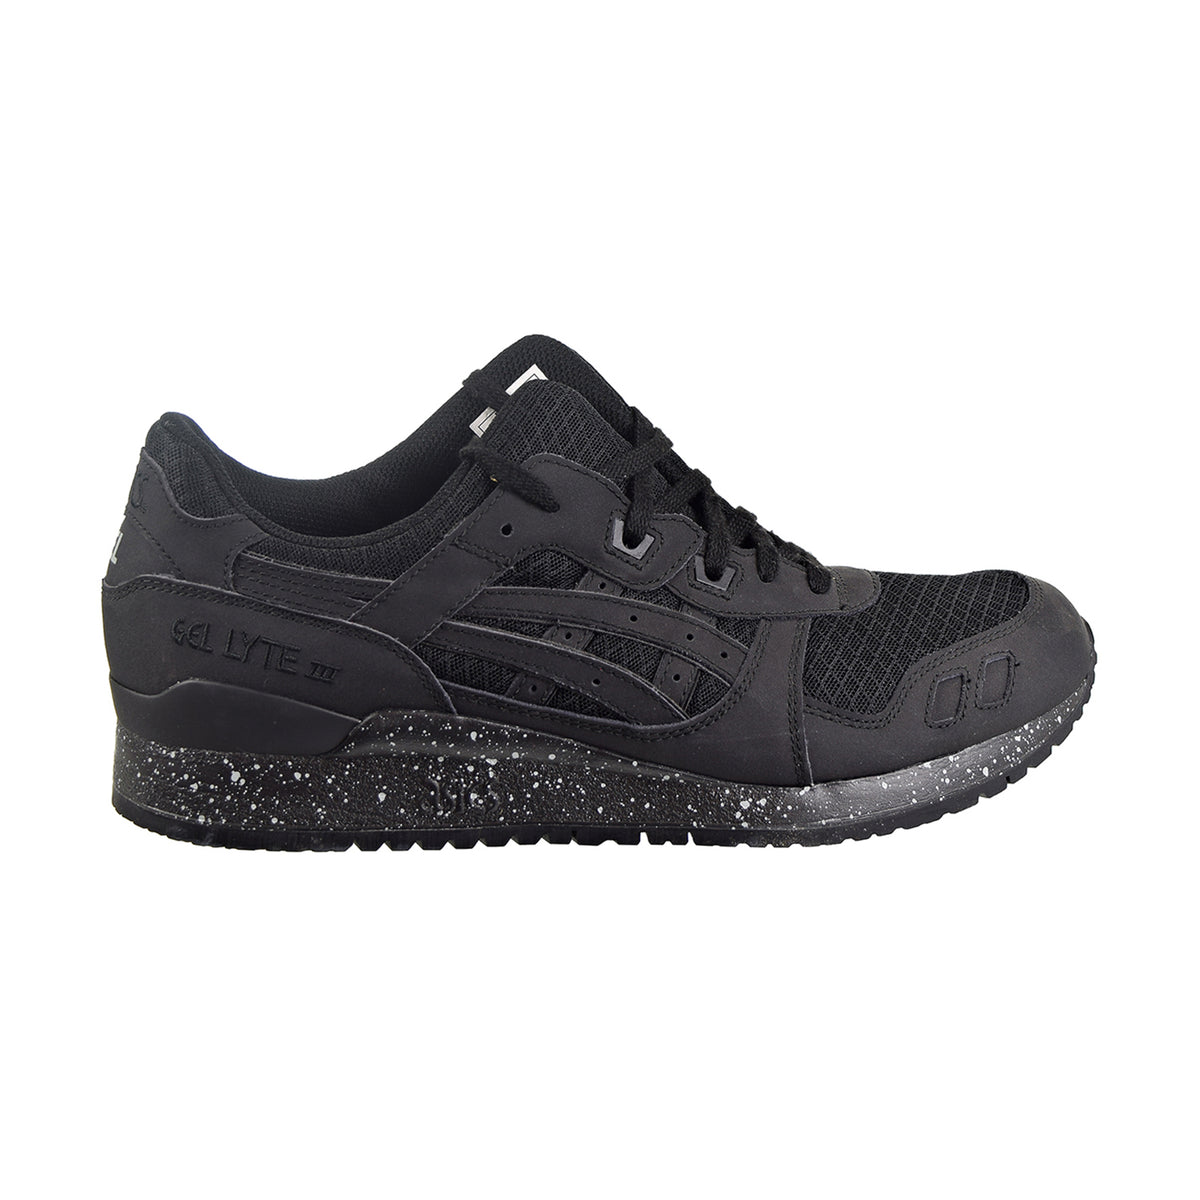  ASICS Men's Gel-Lyte III OG Shoes, 7.0, Black/Black